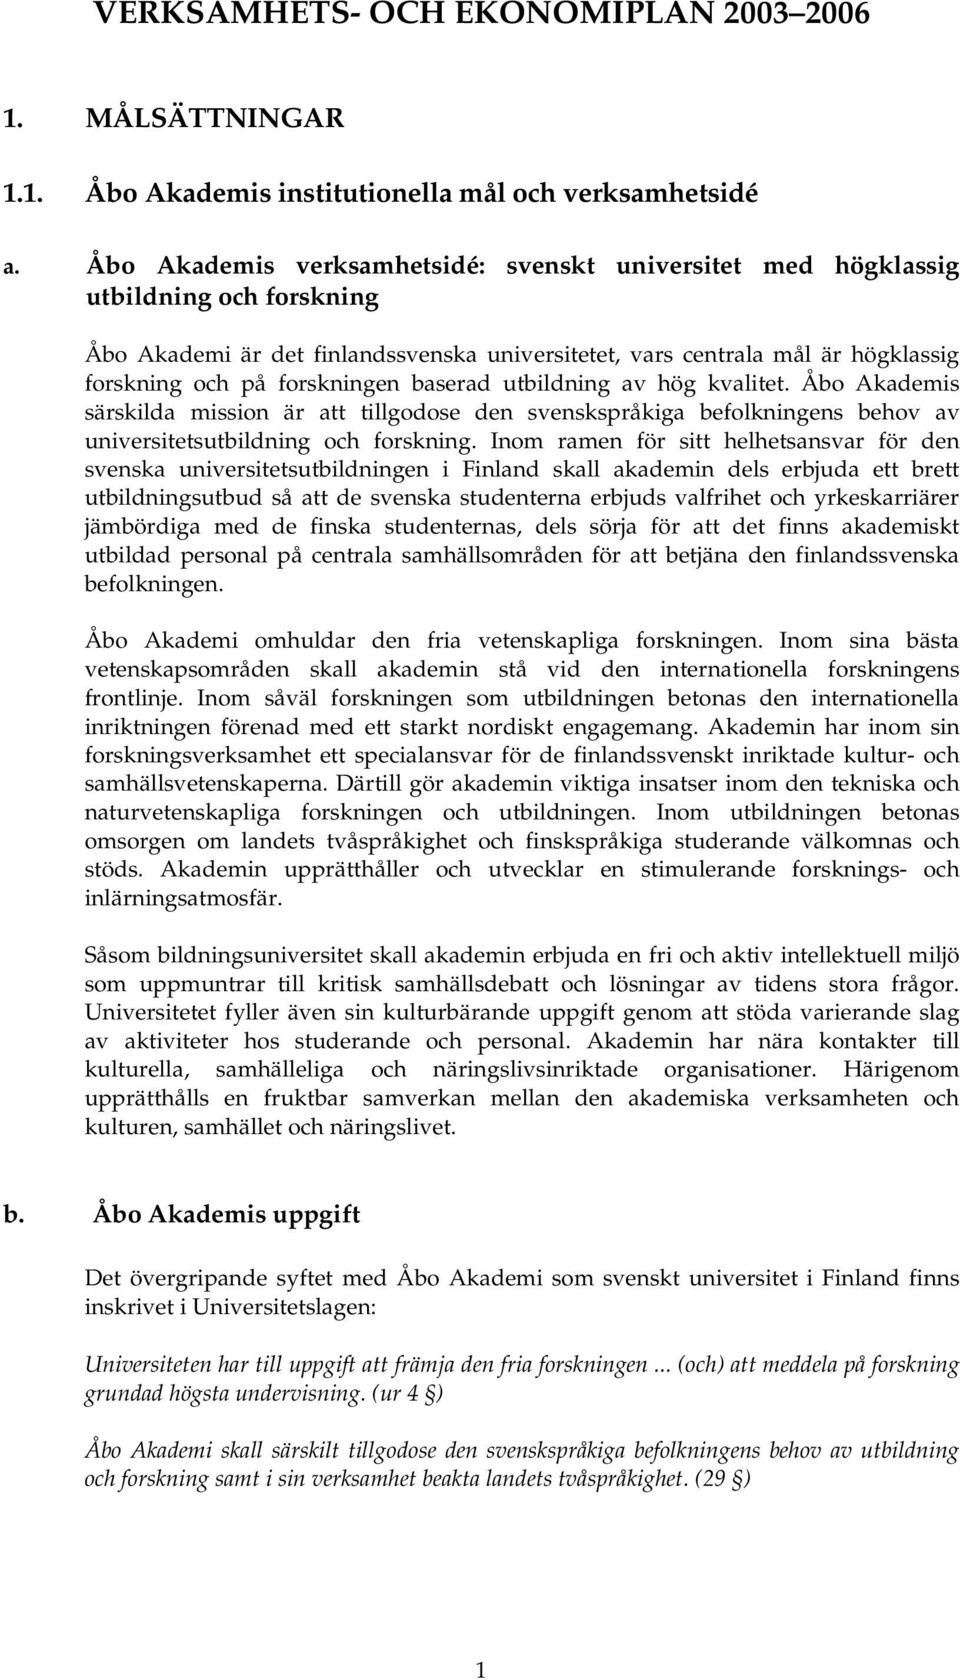 baserad utbildning av hög kvalitet. Åbo Akademis särskilda mission är att tillgodose den svenskspråkiga befolkningens behov av universitetsutbildning och forskning.